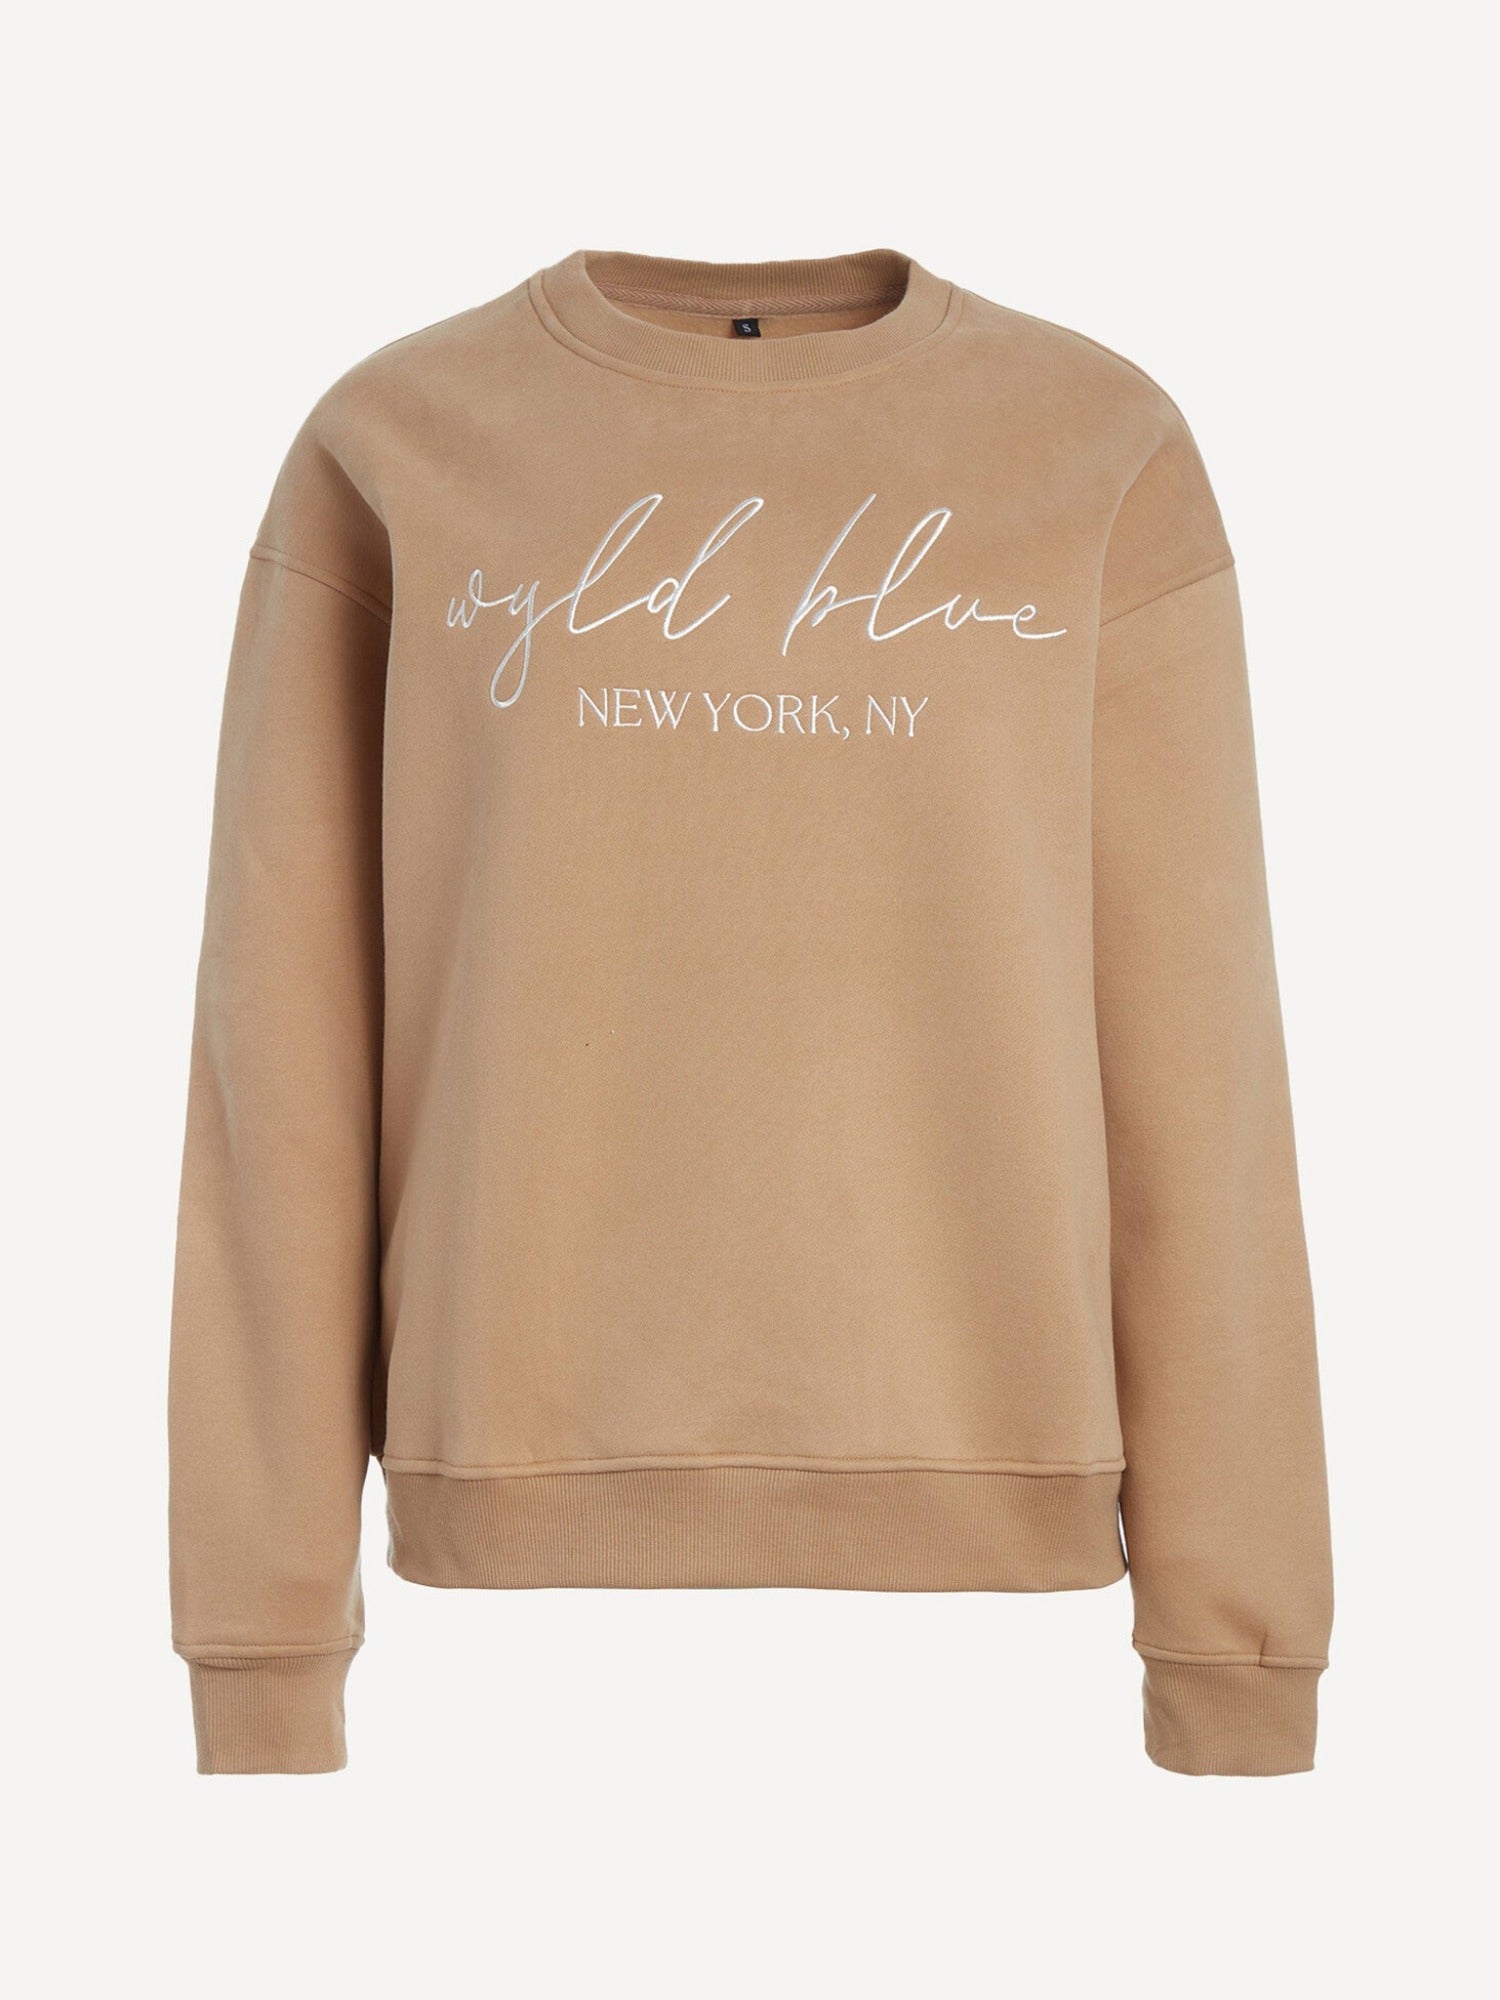 WB Sweater New York, NY